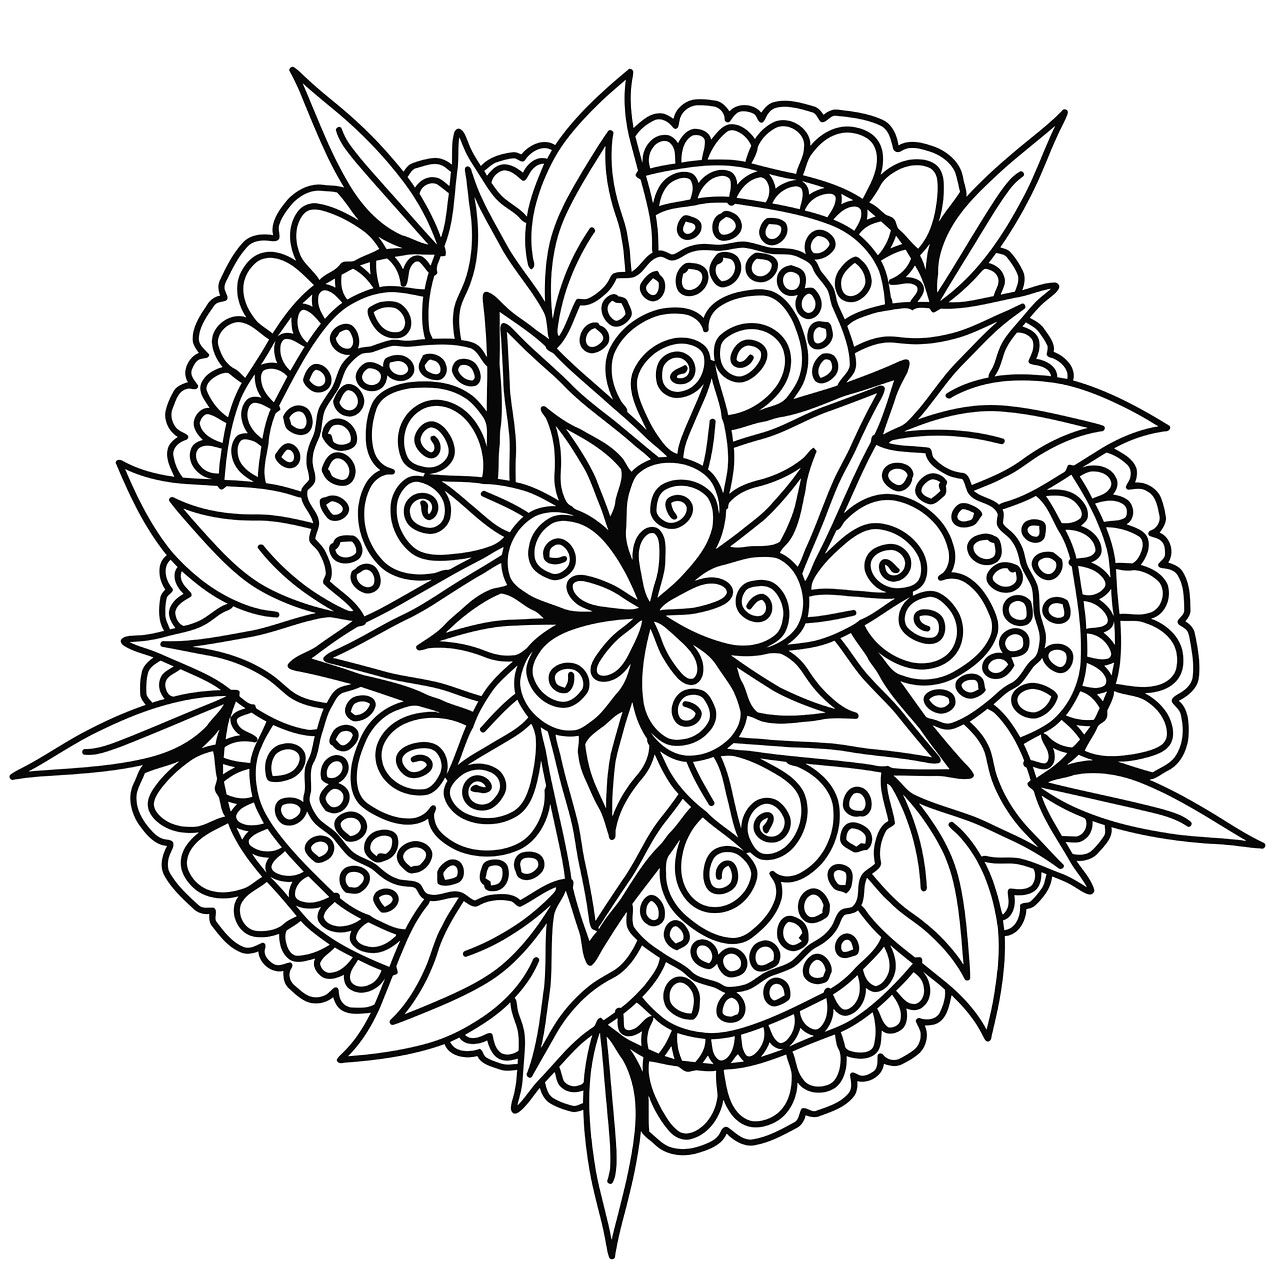 Cool Hand Drawn Mandala Coloring Page